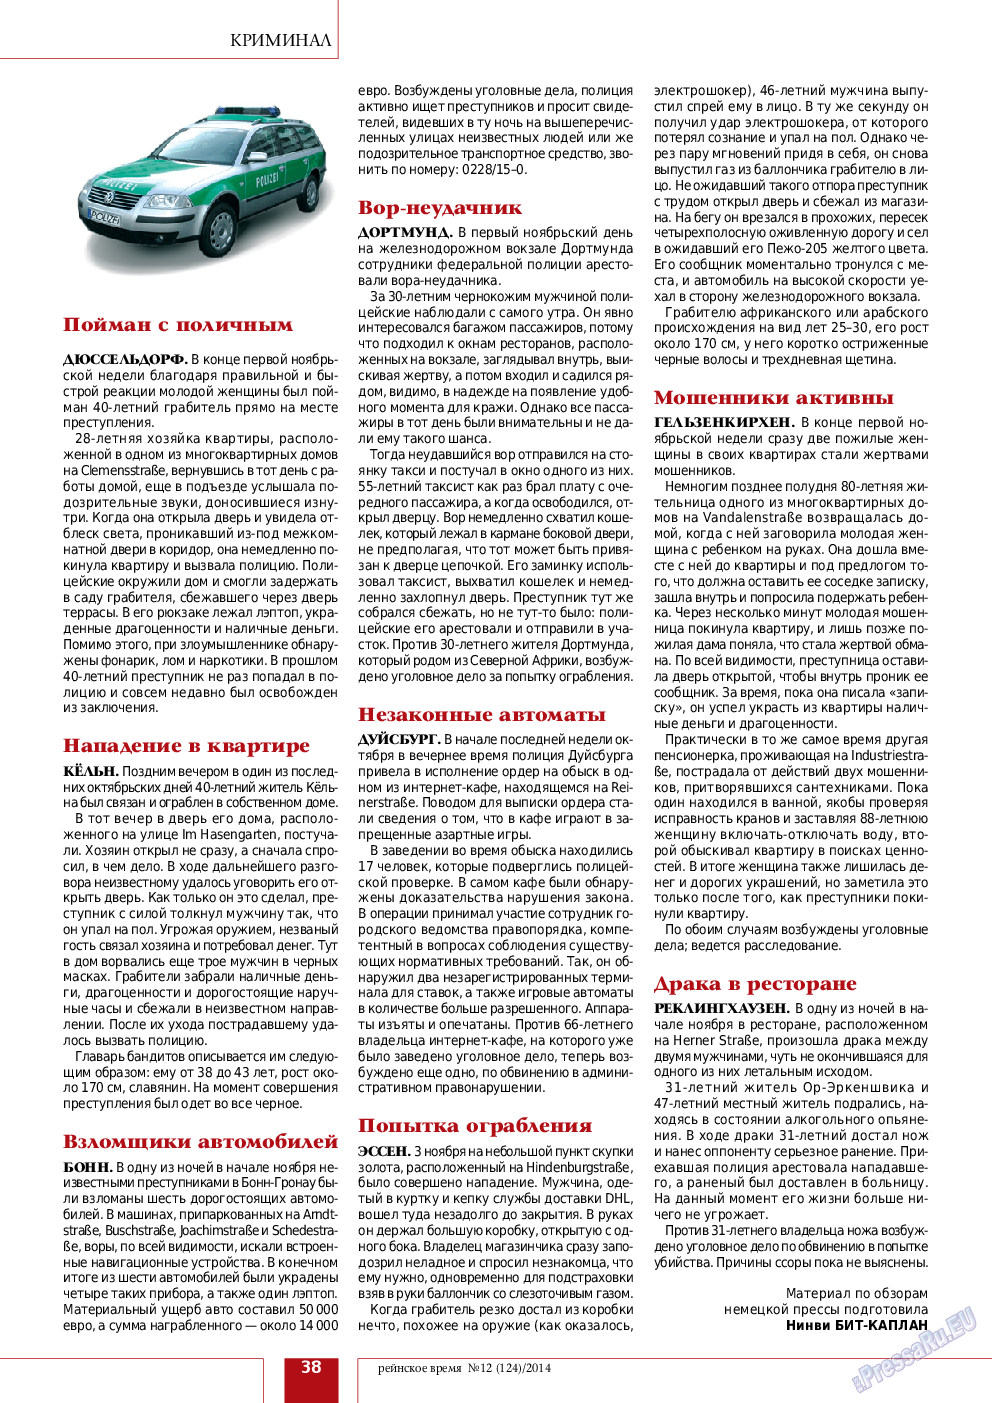 Рейнское время, журнал. 2014 №12 стр.38